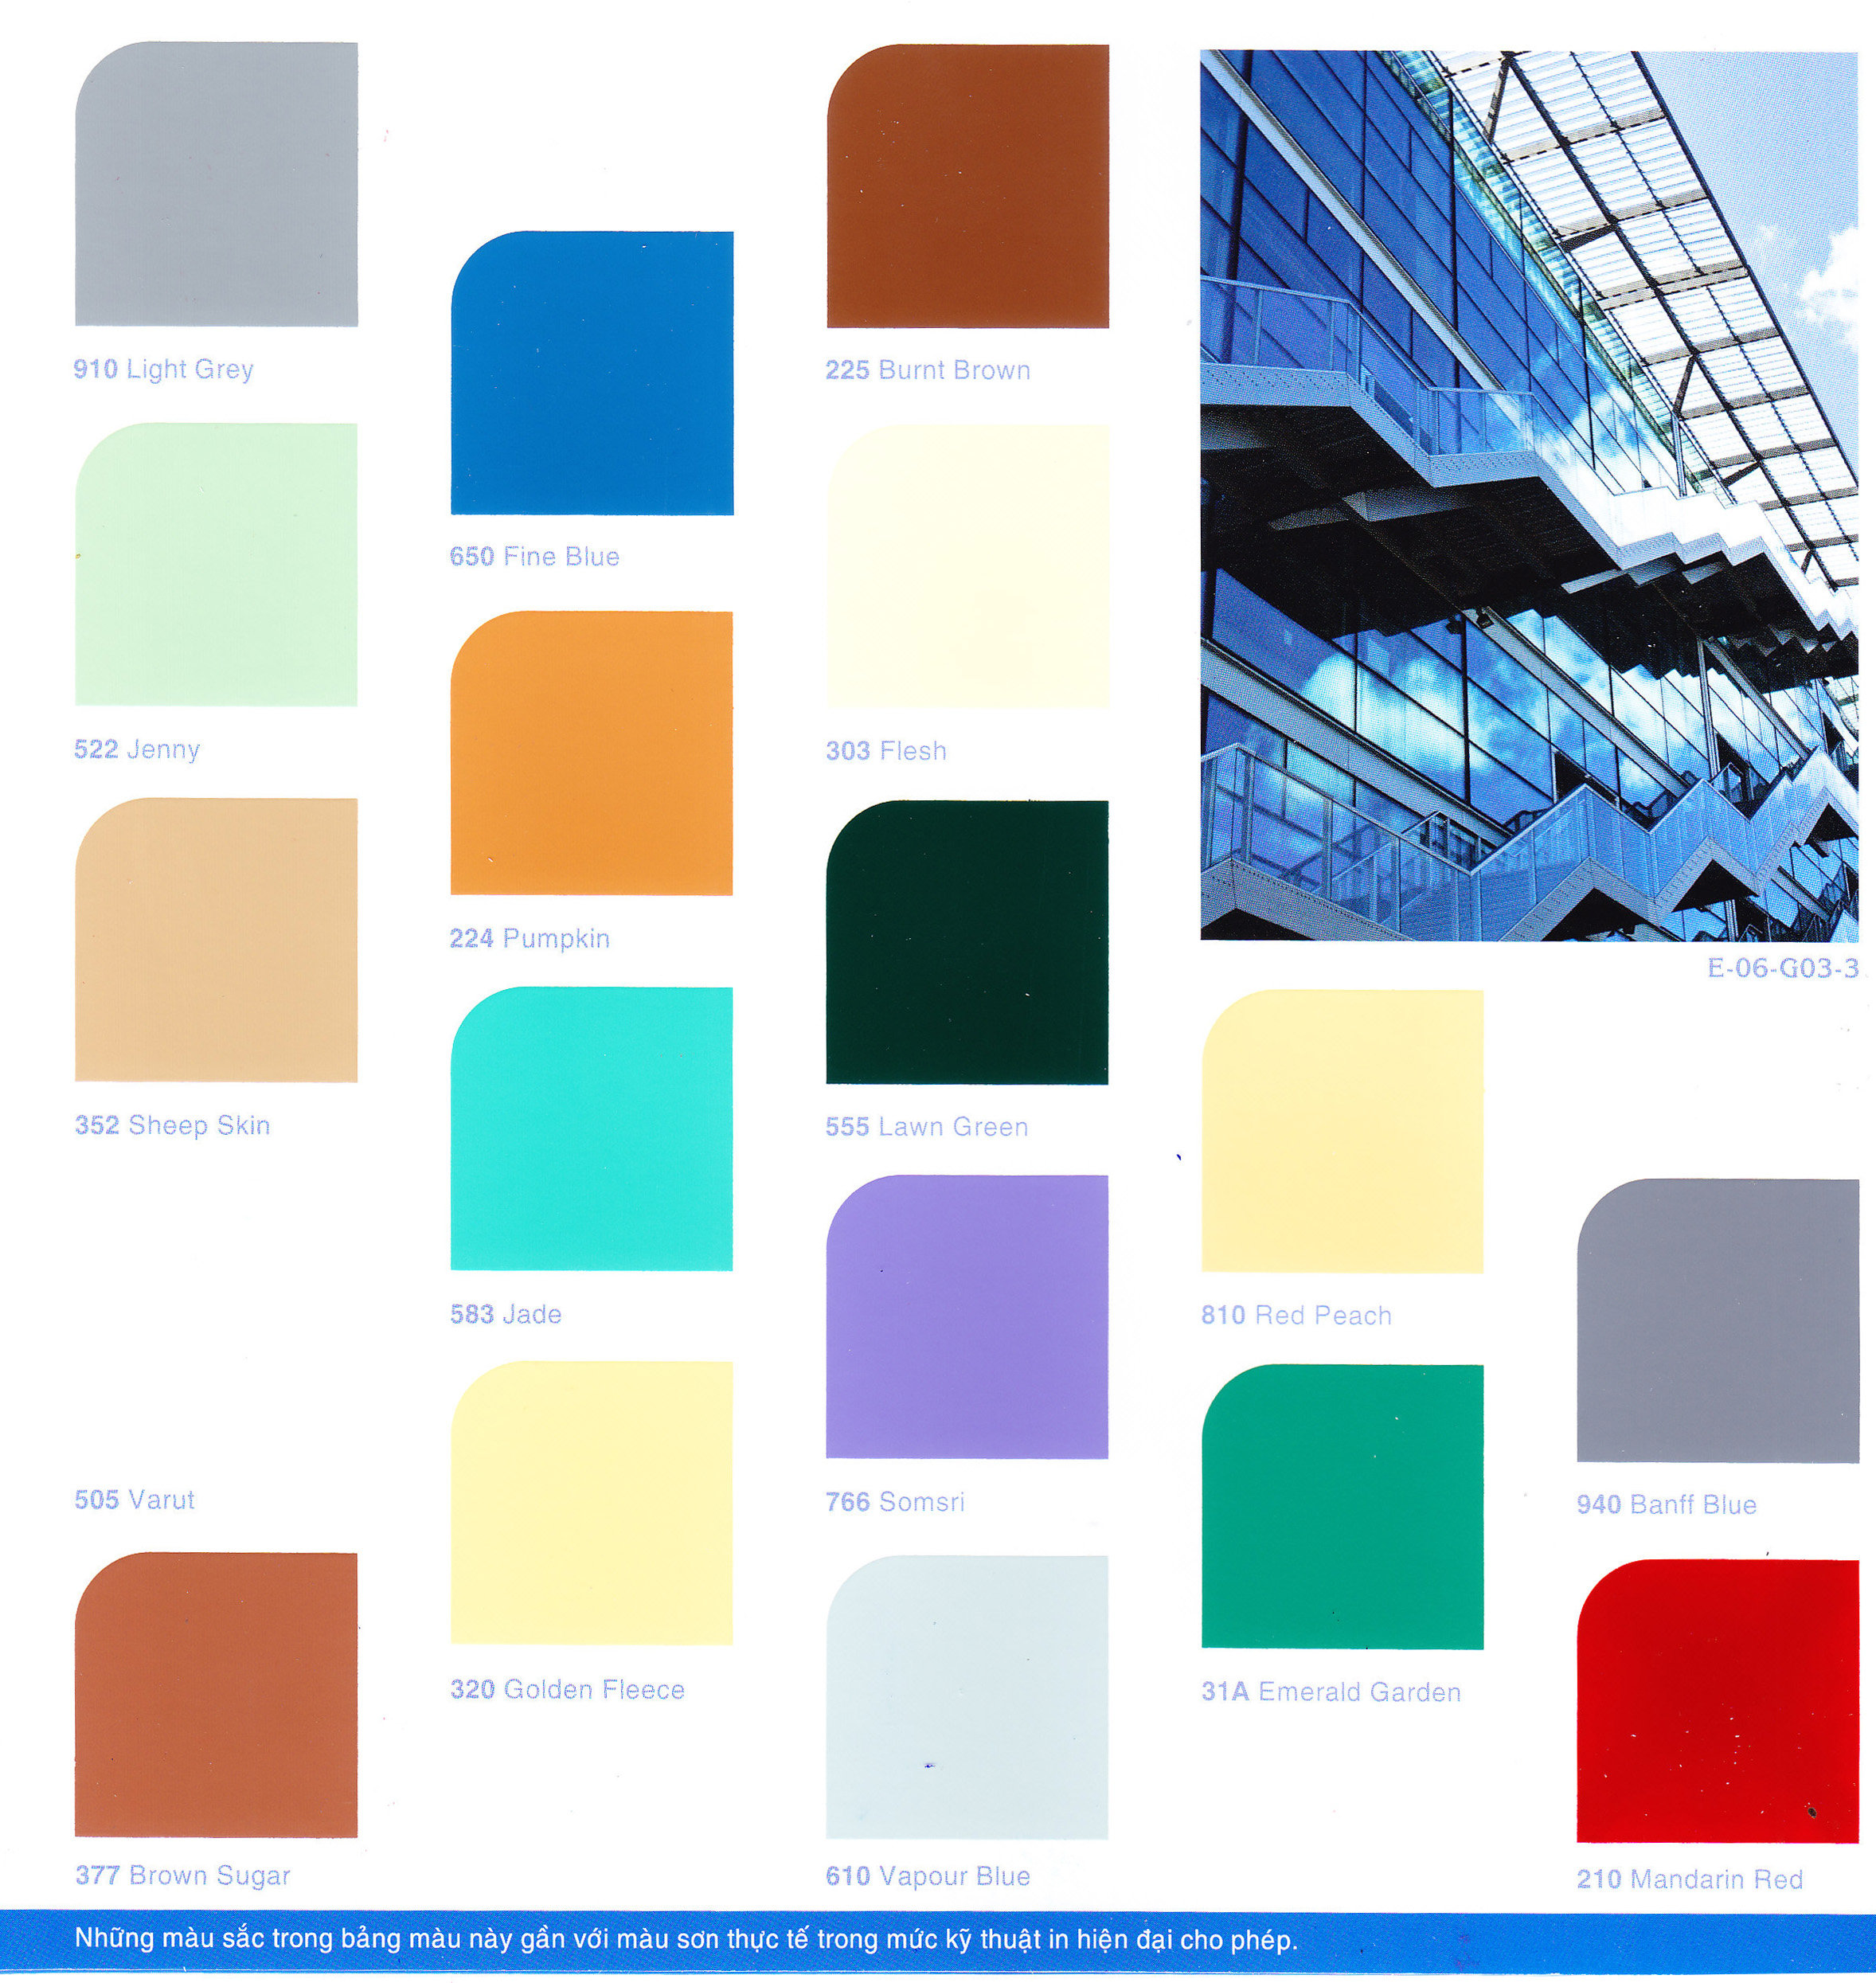 Bảng màu sơn dầu Expo: Khám phá những màu sắc đẹp tuyệt vời của sơn dầu Expo với bảng màu đầy đủ và chất lượng cao. Hãy xem hình ảnh để thấy rõ hơn sự đa dạng và độ bền của sản phẩm.